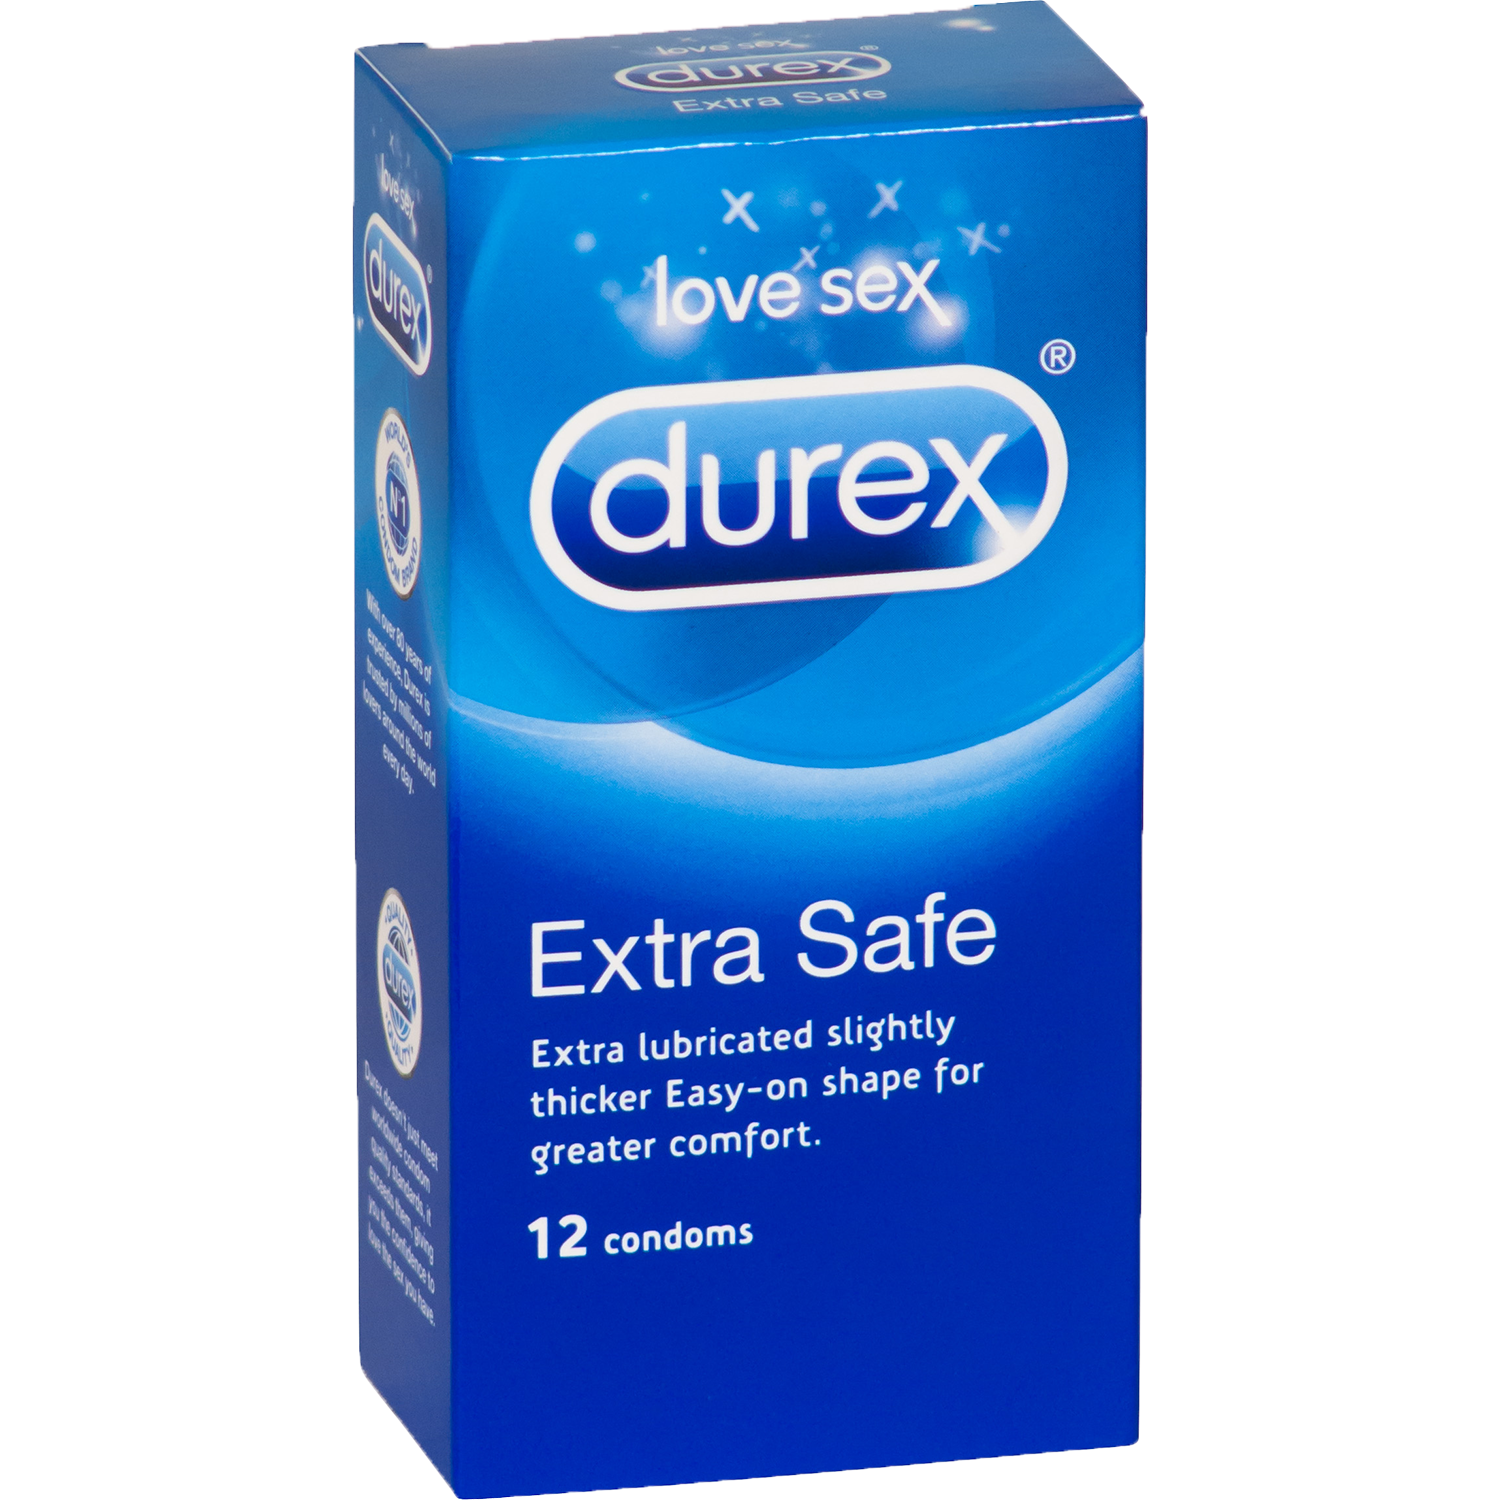 Durex prezervatif